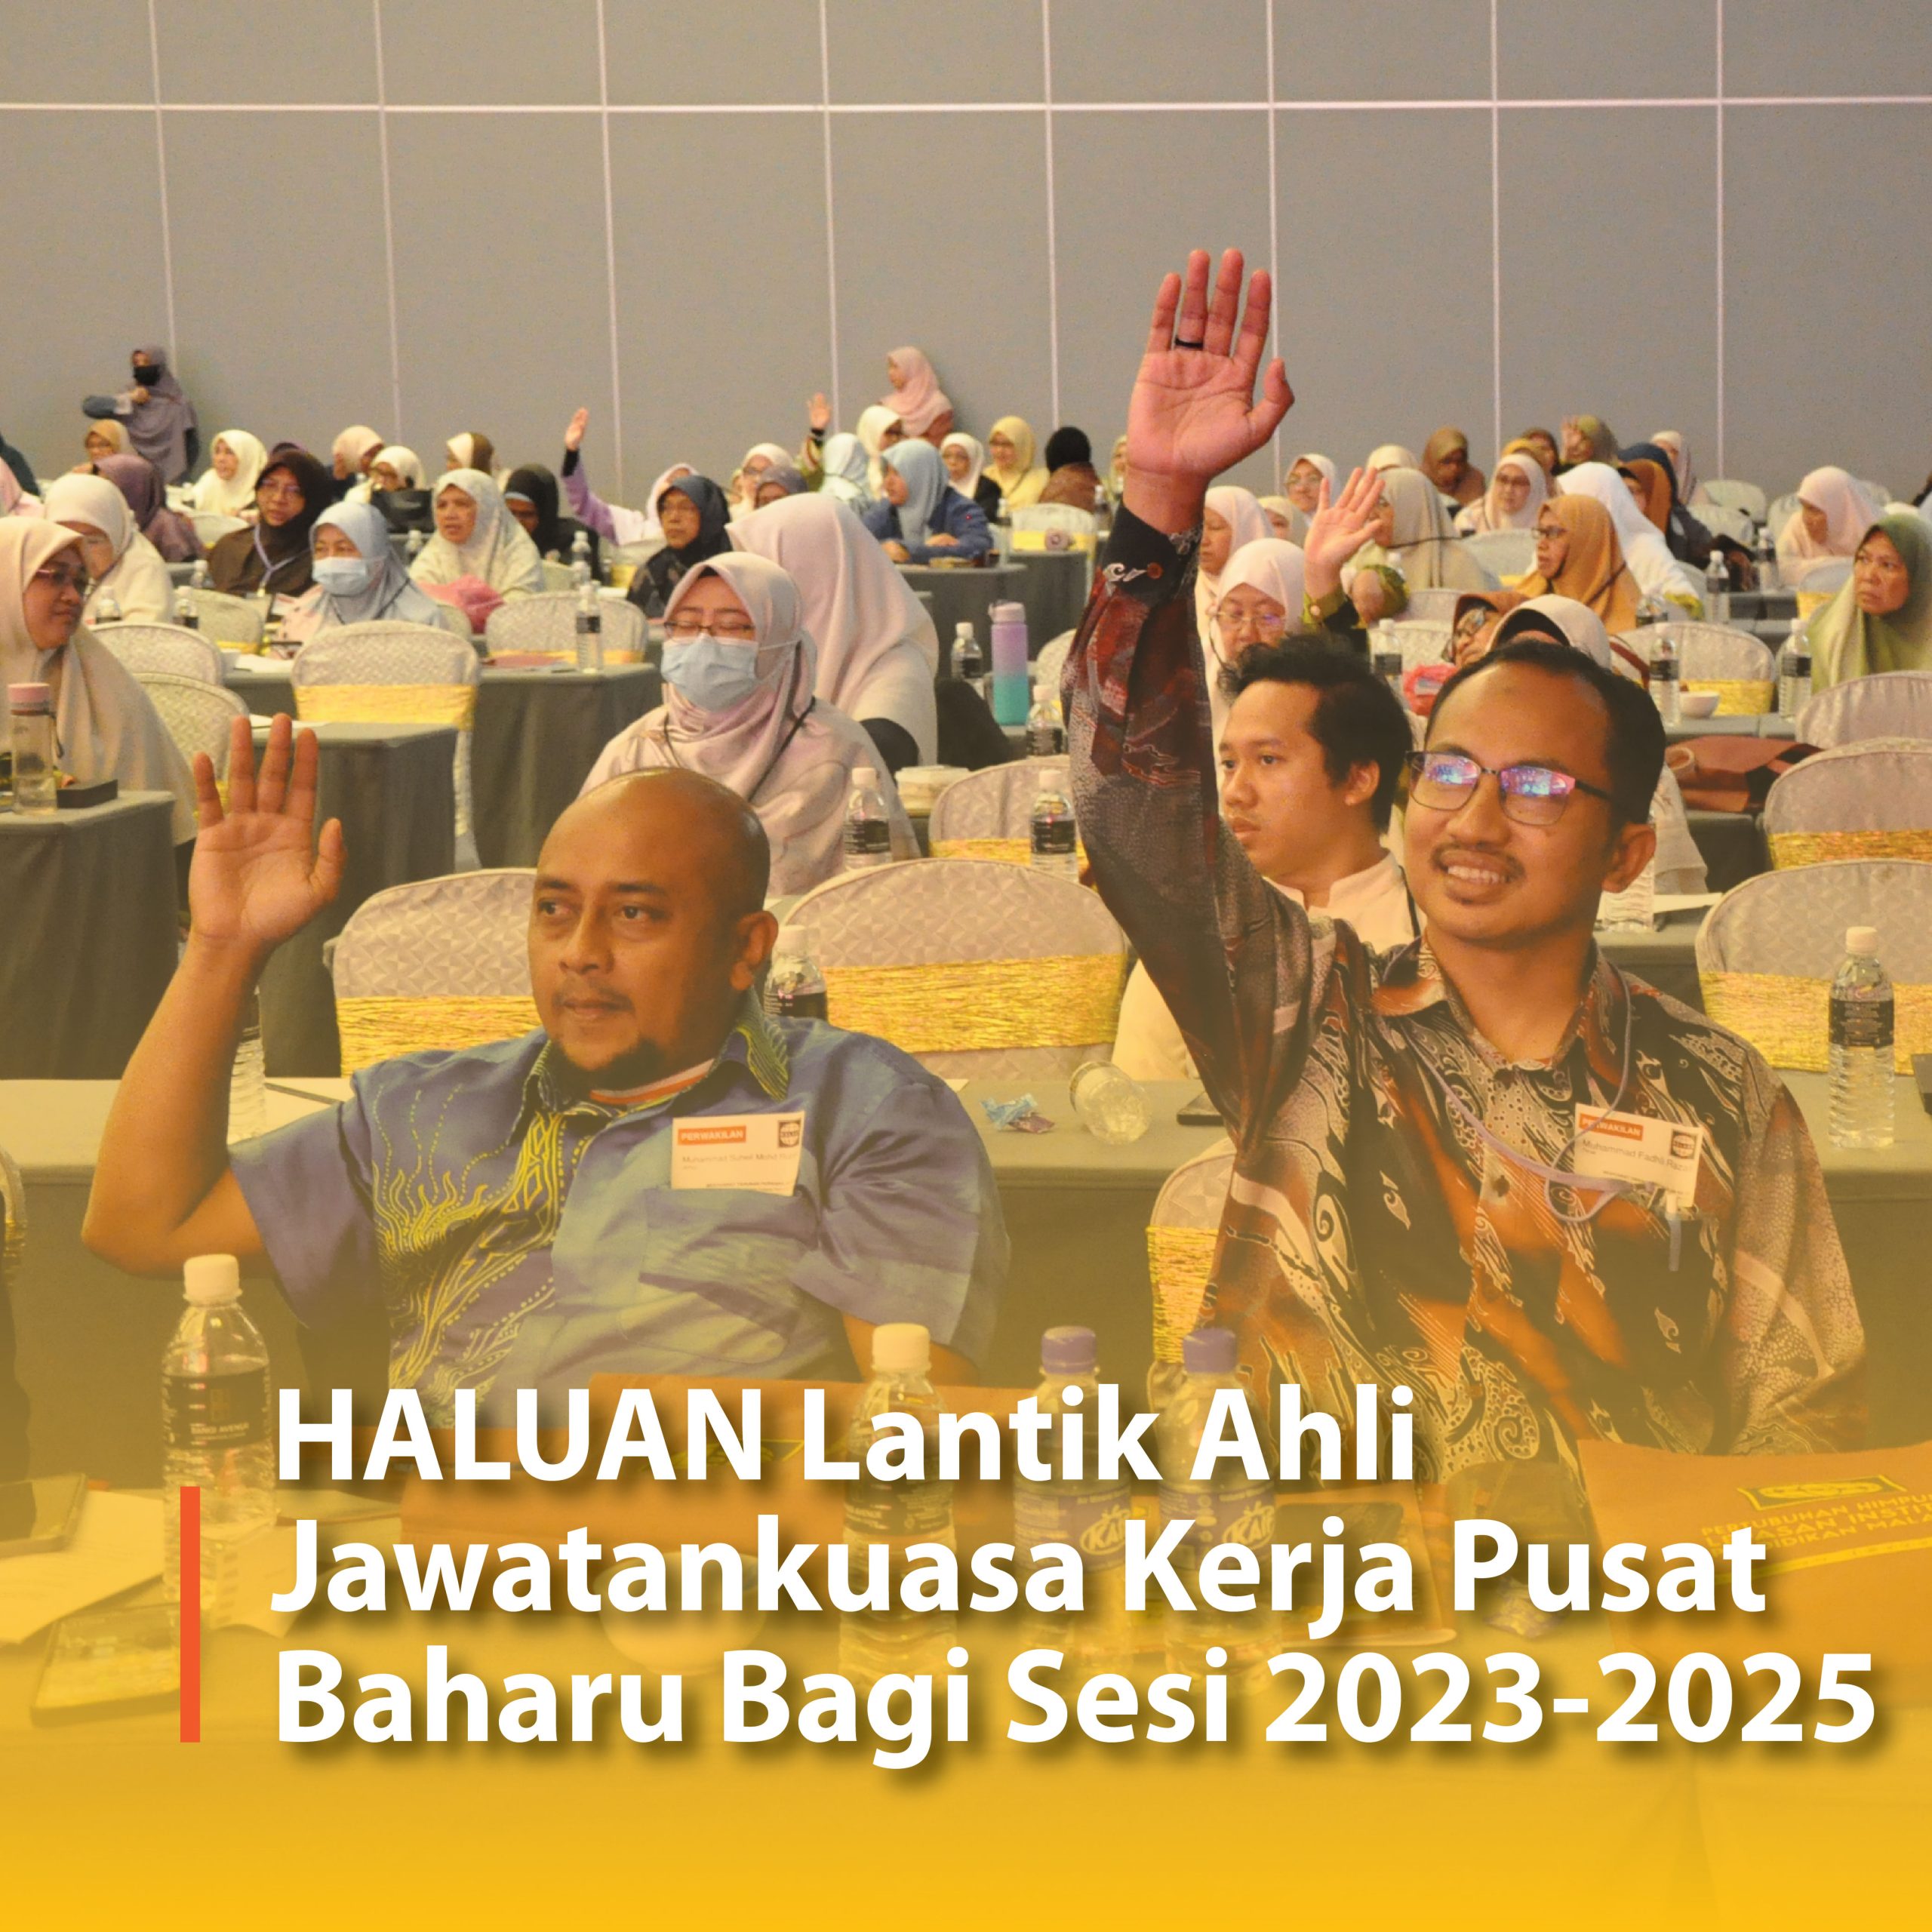 HALUAN Lantik Ahli Jawatankuasa Kerja Pusat Baharu Bagi Sesi 2023-2025